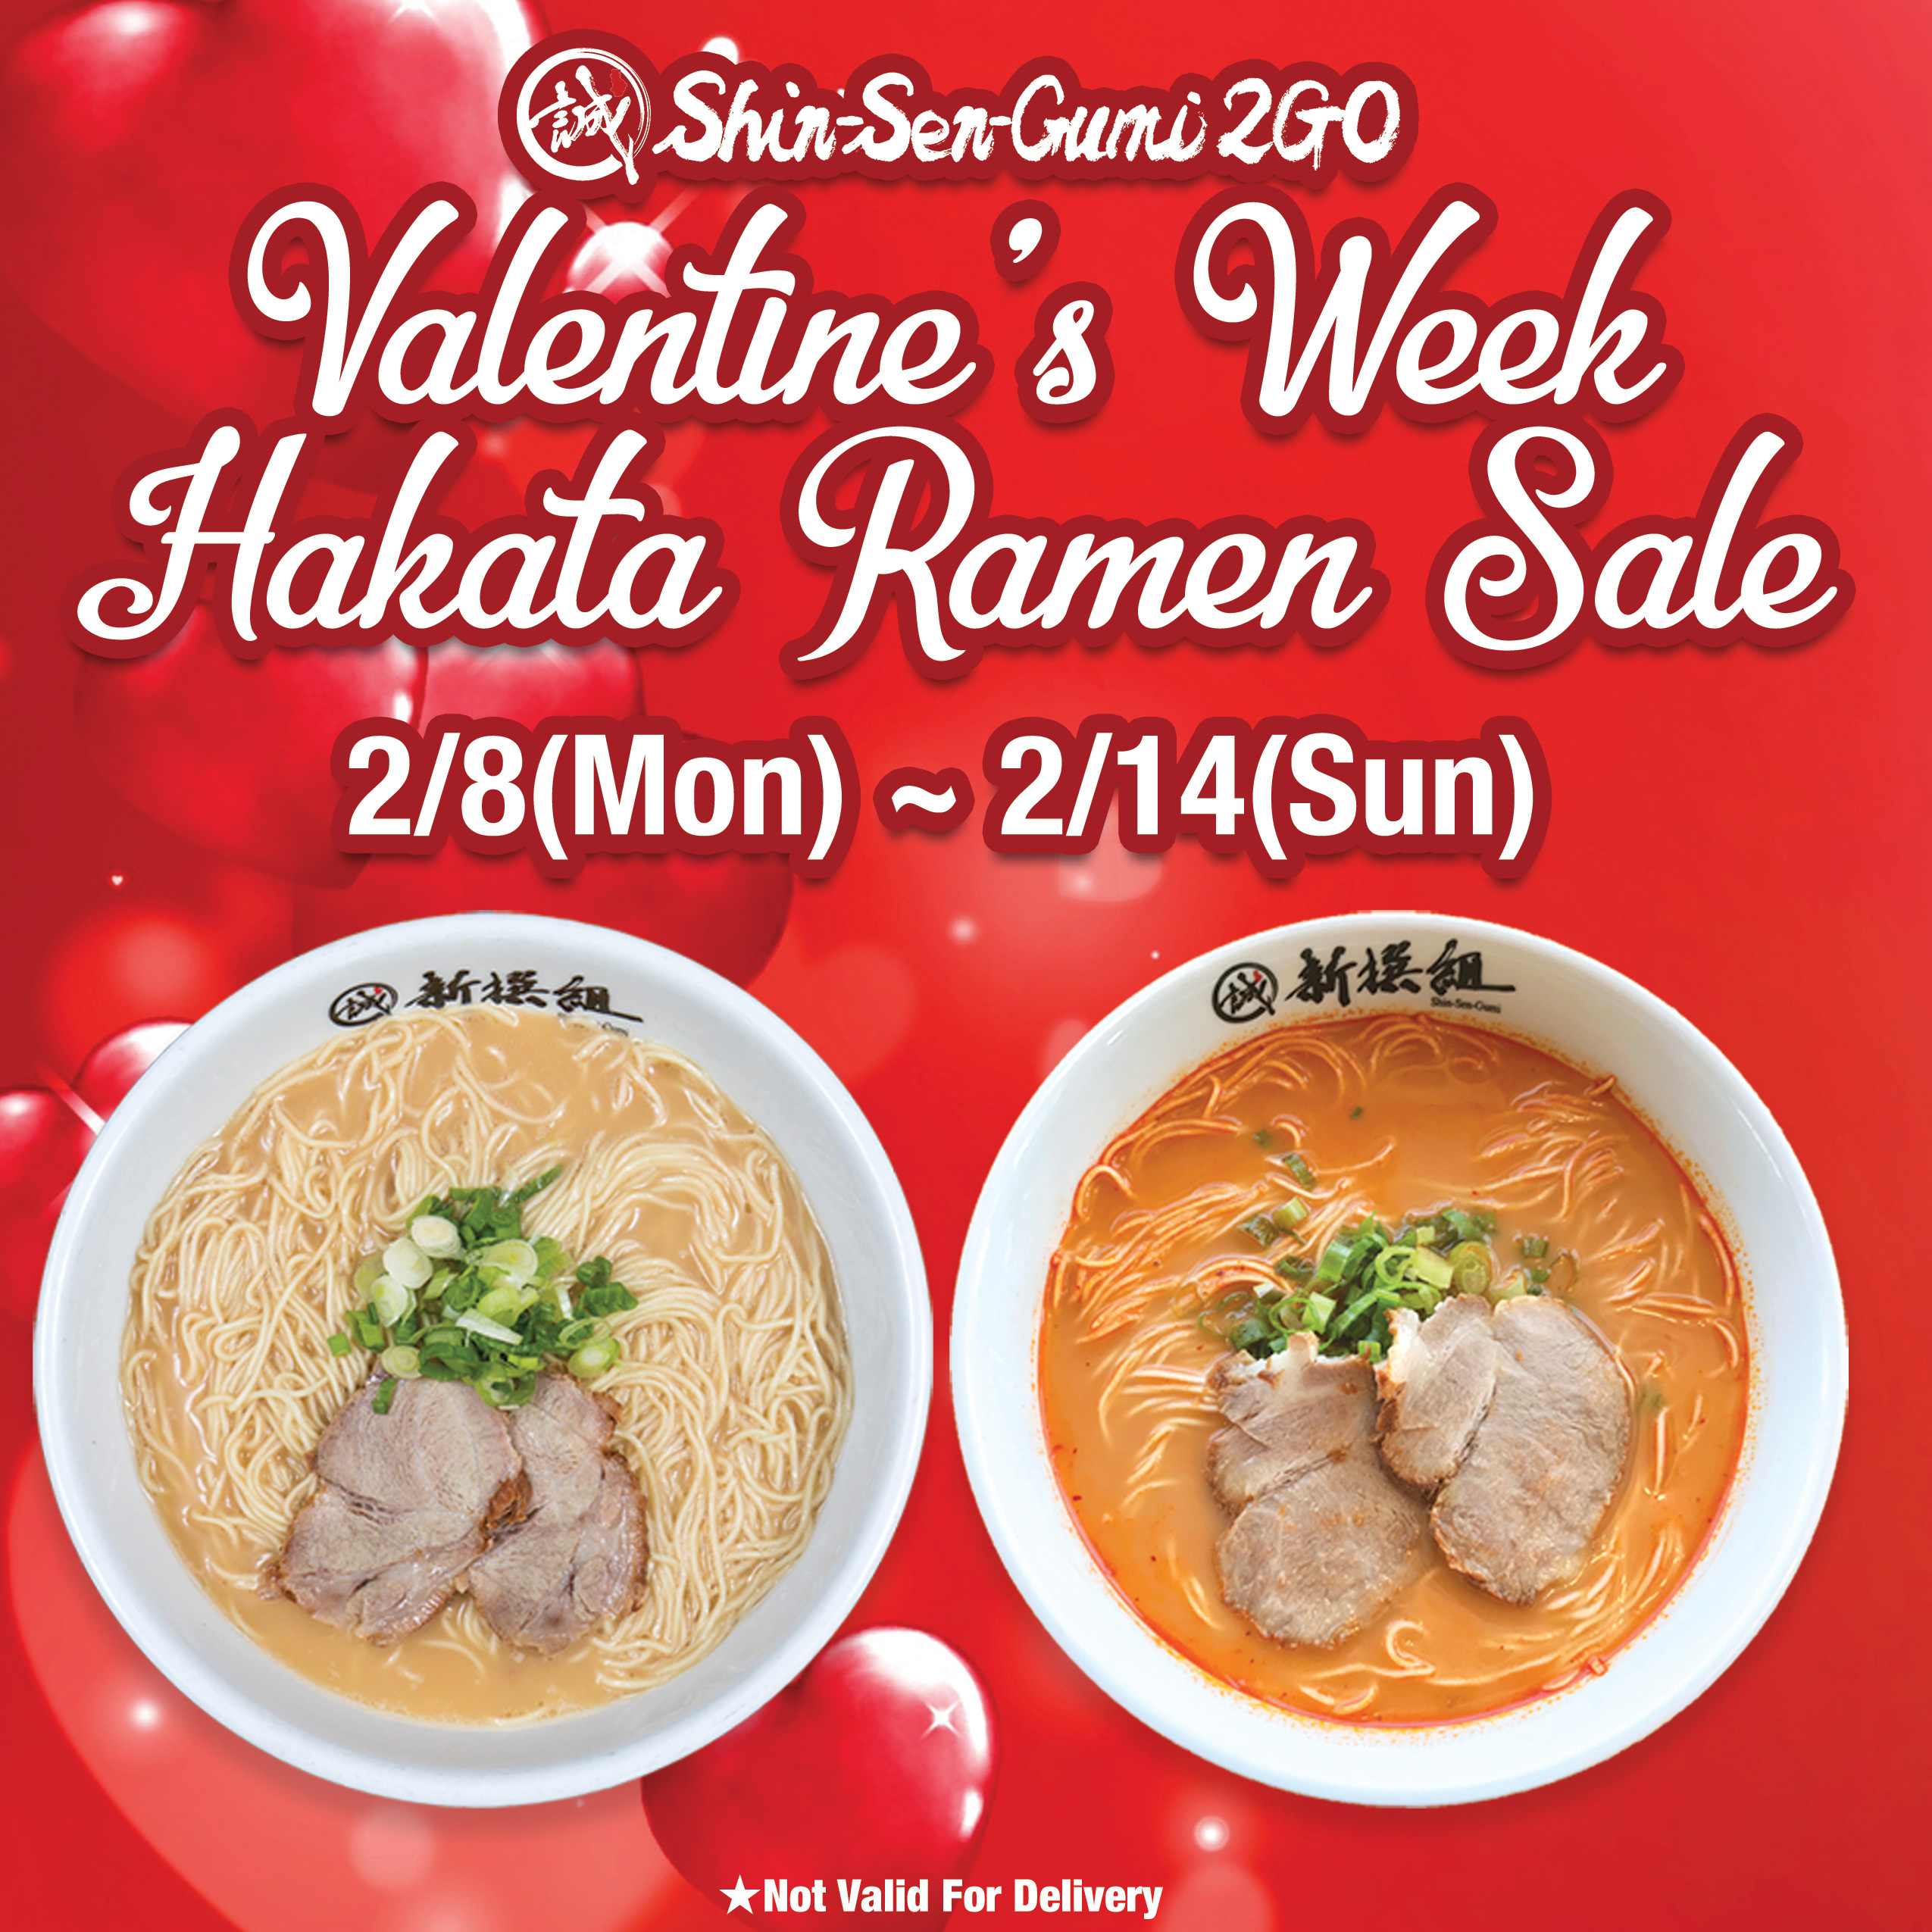 2go-gardena-valentine-week-hakata-ramen-sale